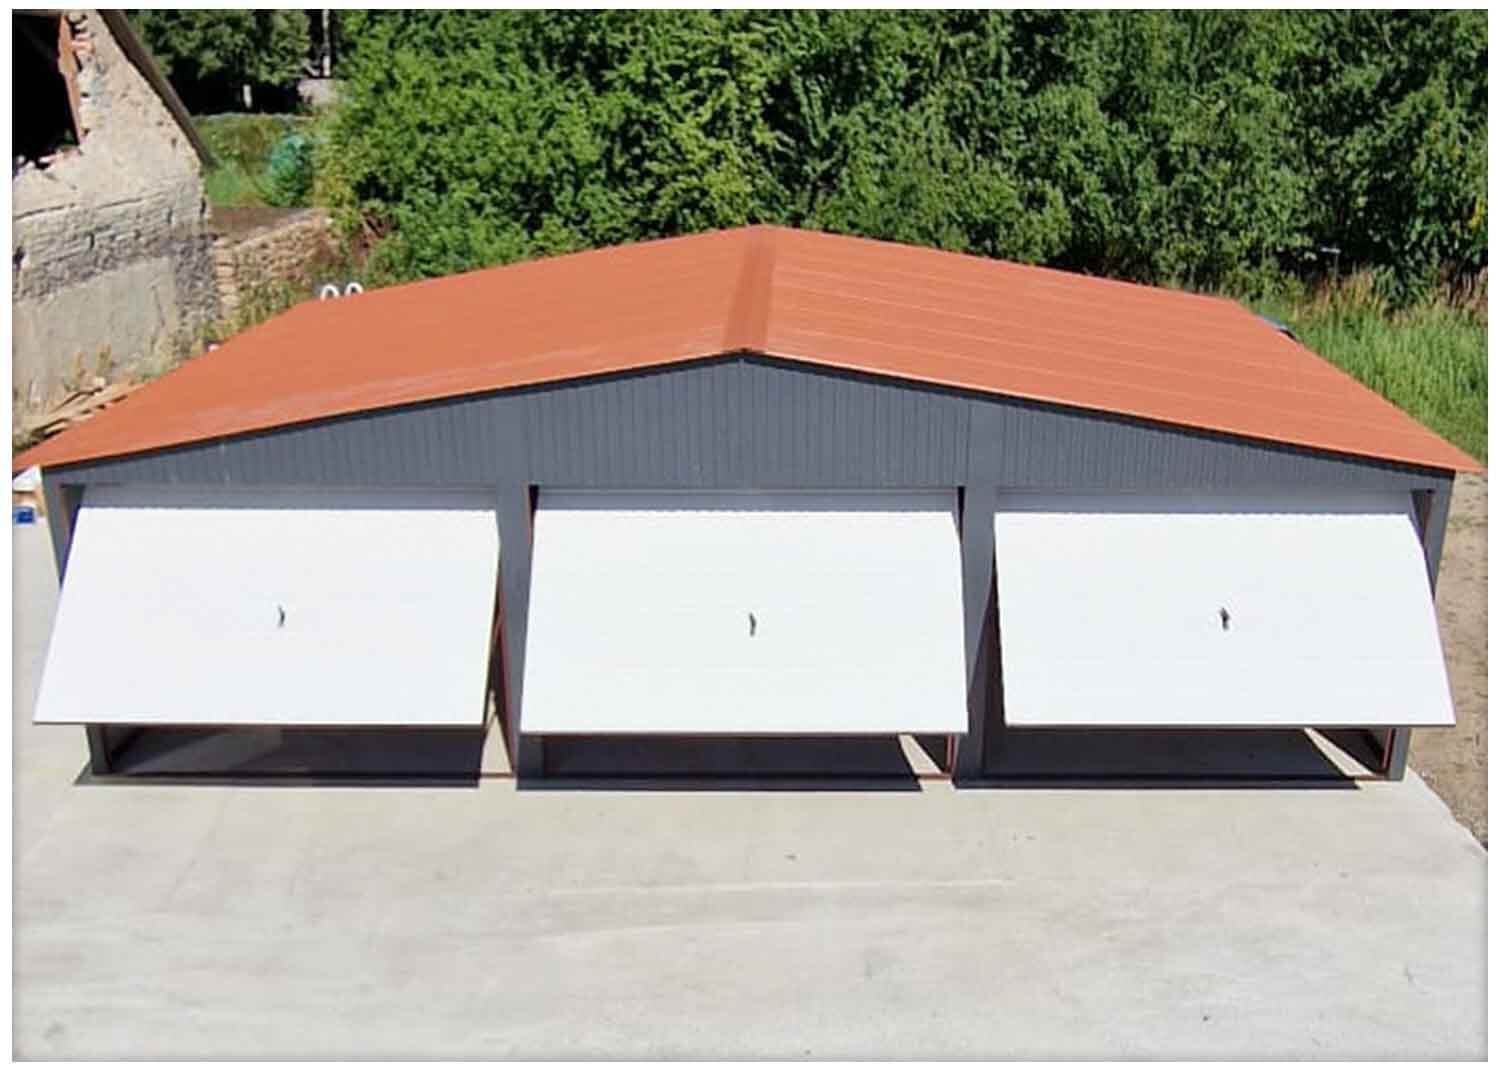 Plechová garáž 9x6m, sedlová střecha, třímístná, vrata BTX 9010 - StalConcept.cz